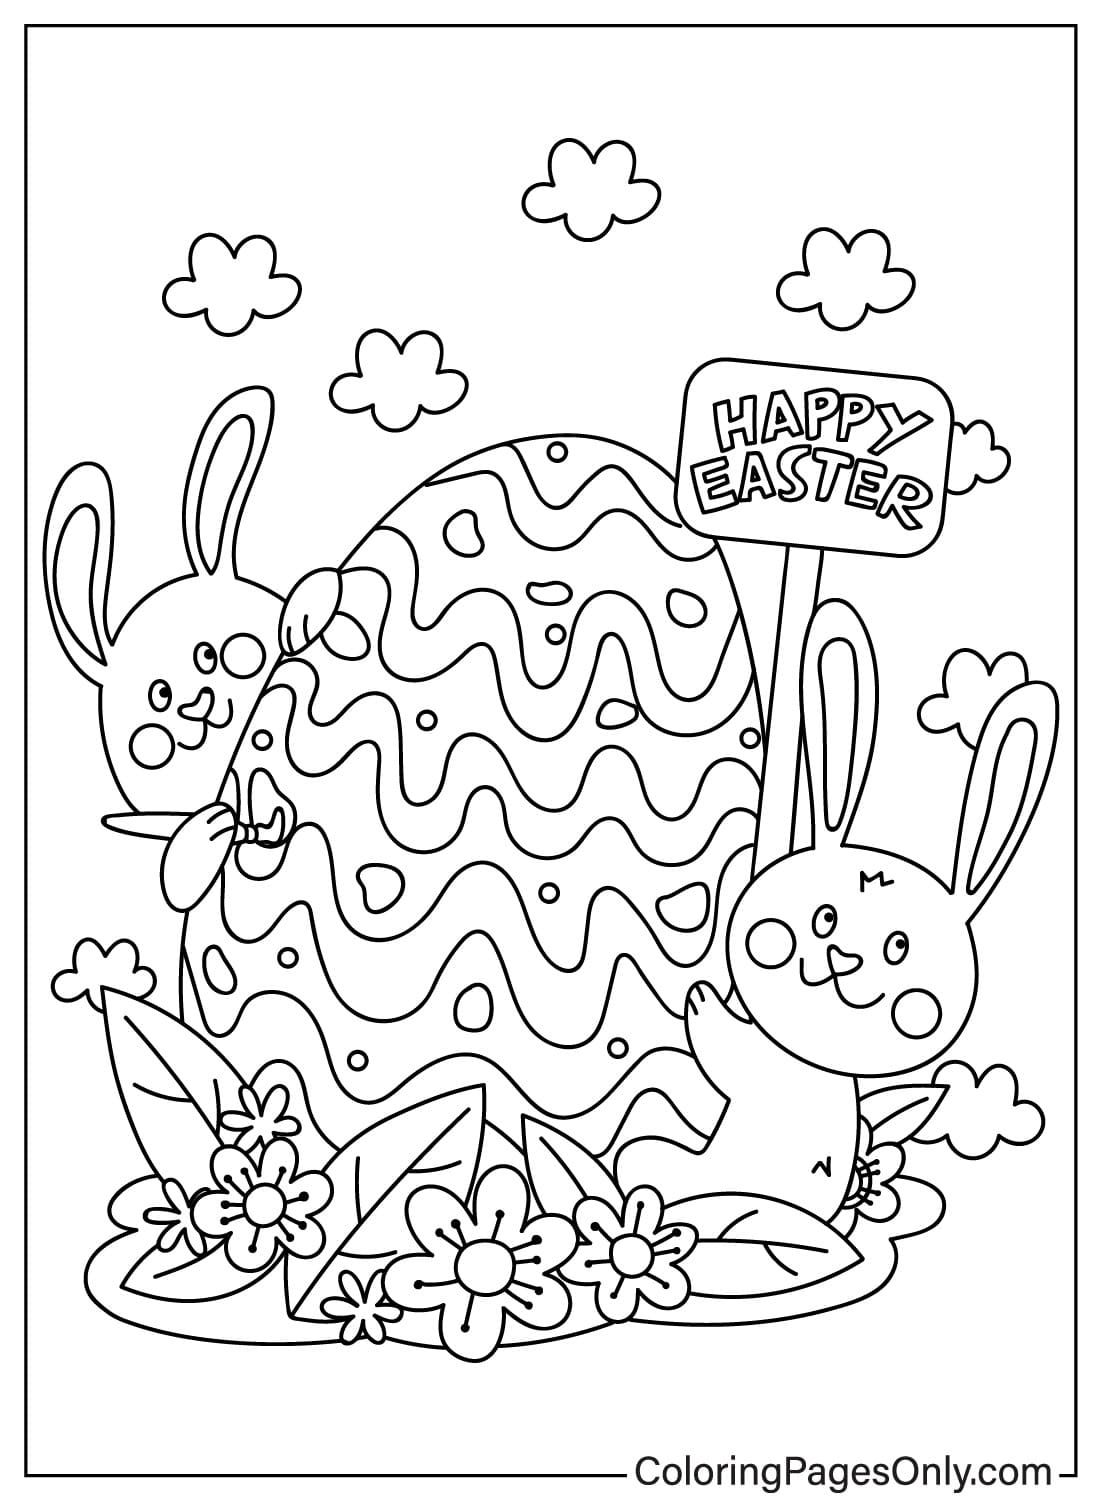 Desenhando a página para colorir do coelhinho da Páscoa do Coelhinho da Páscoa